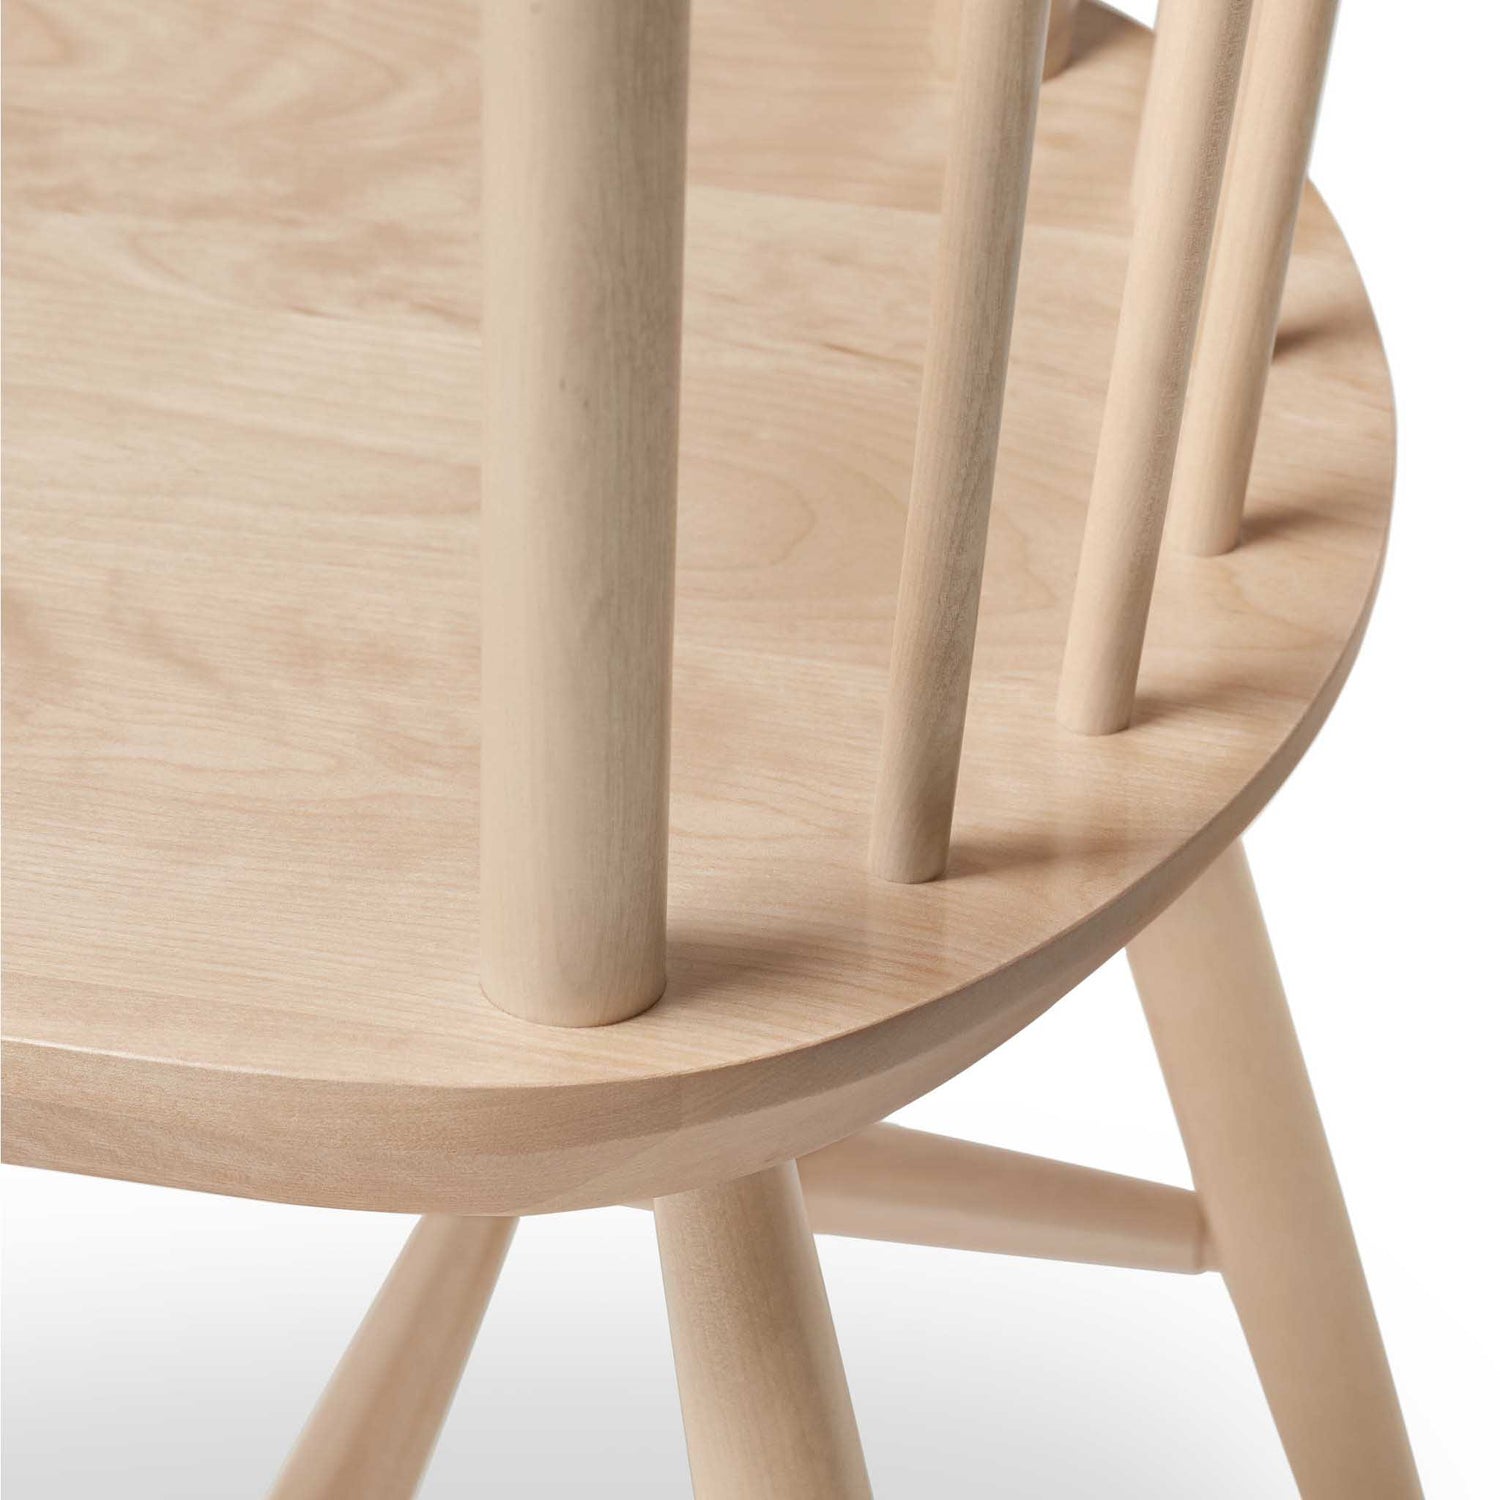 Chaise en bois pâle fait au Québec